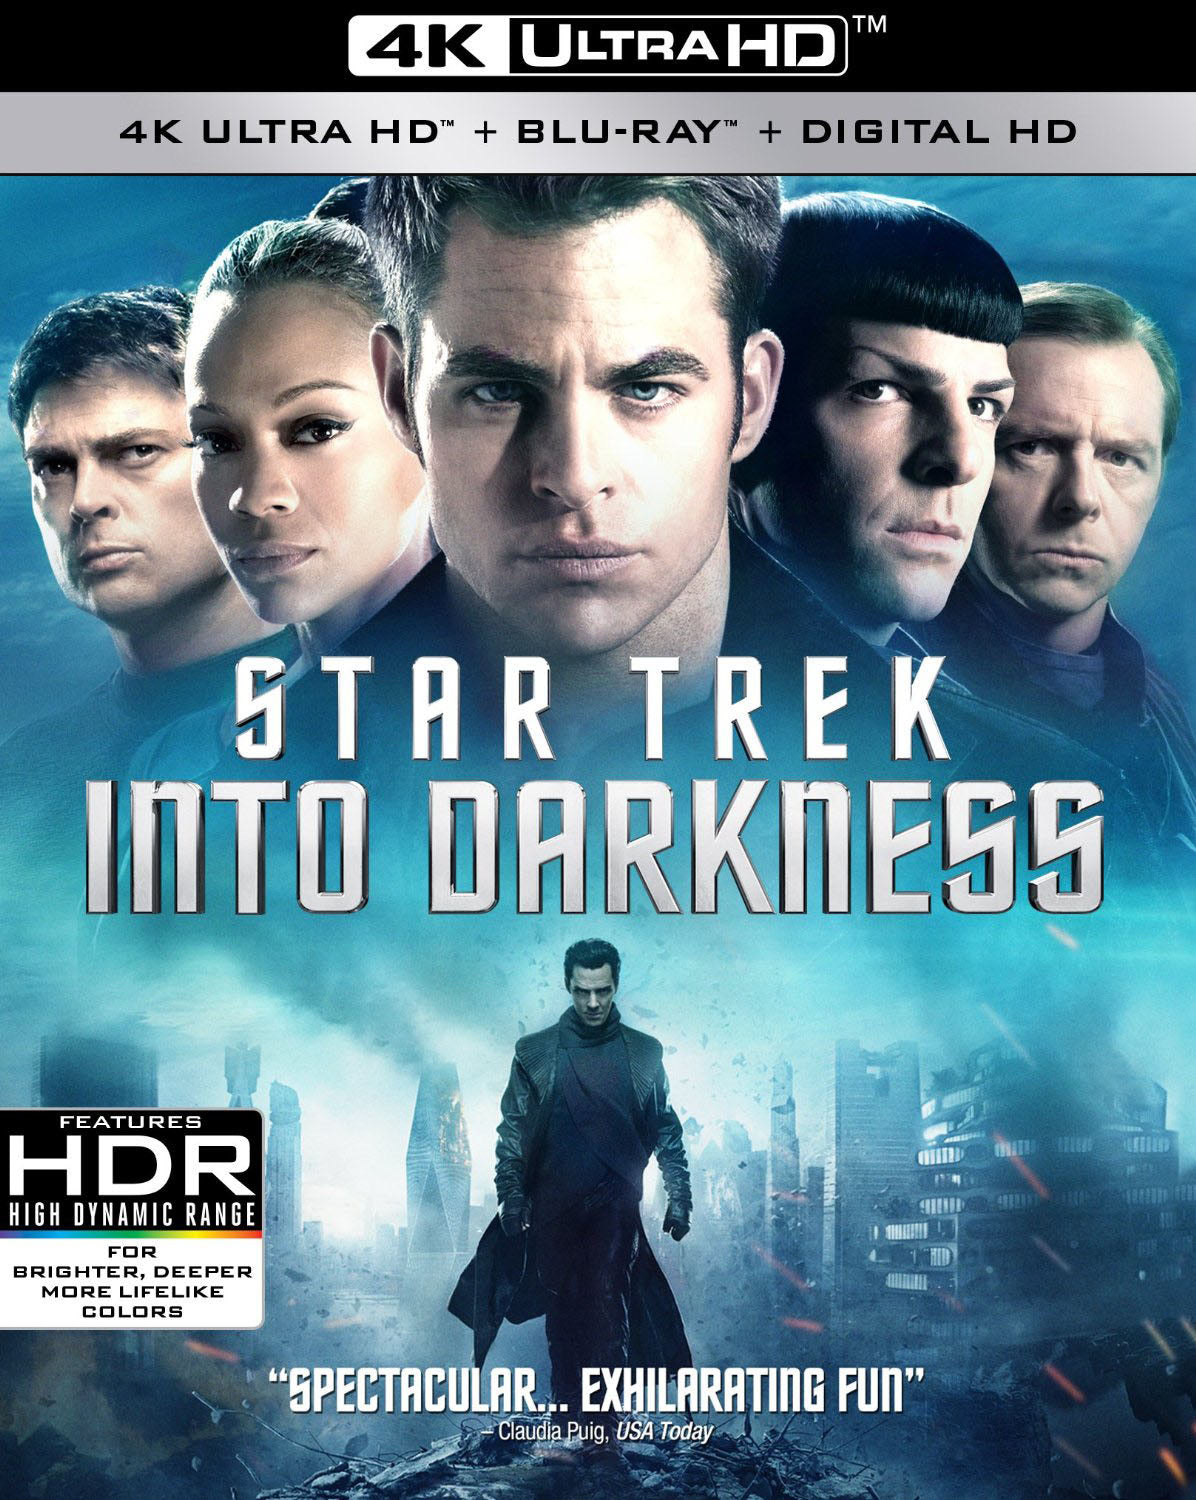 Star Trek: Into Darkness (2013) iTunes 4K redemption only